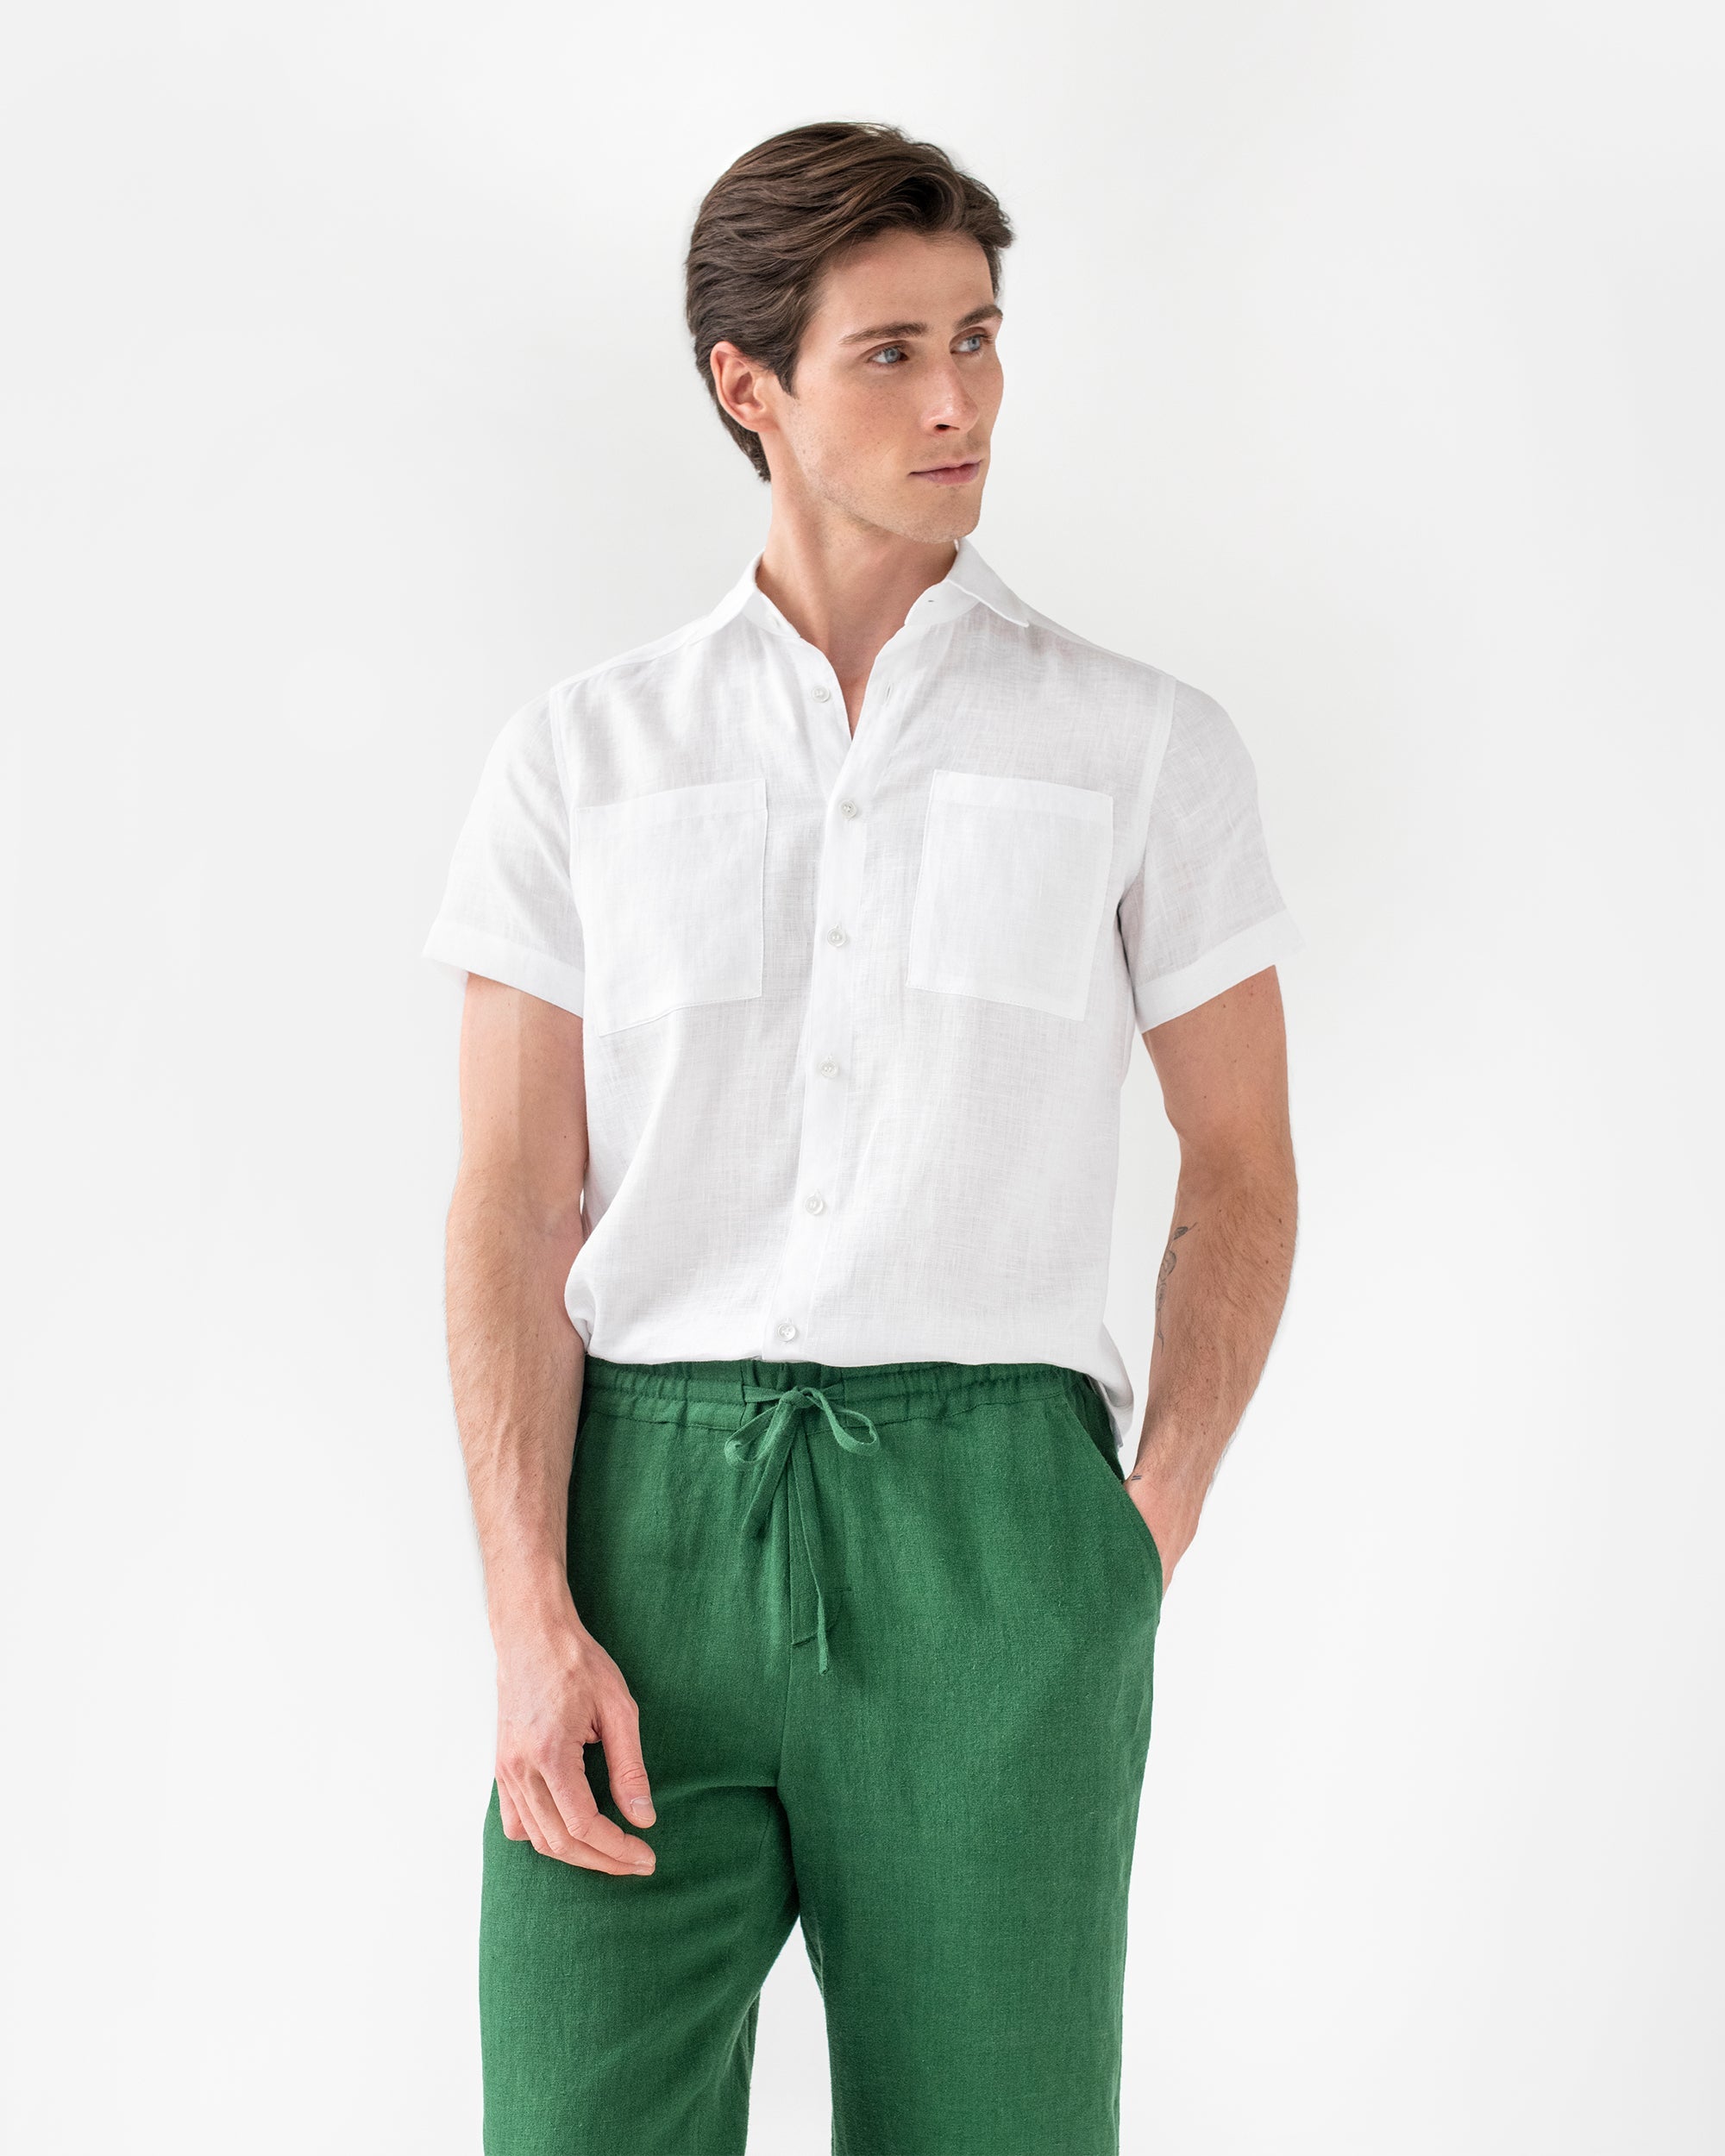 Men's casual and elegant polo t-shirts | La Martina